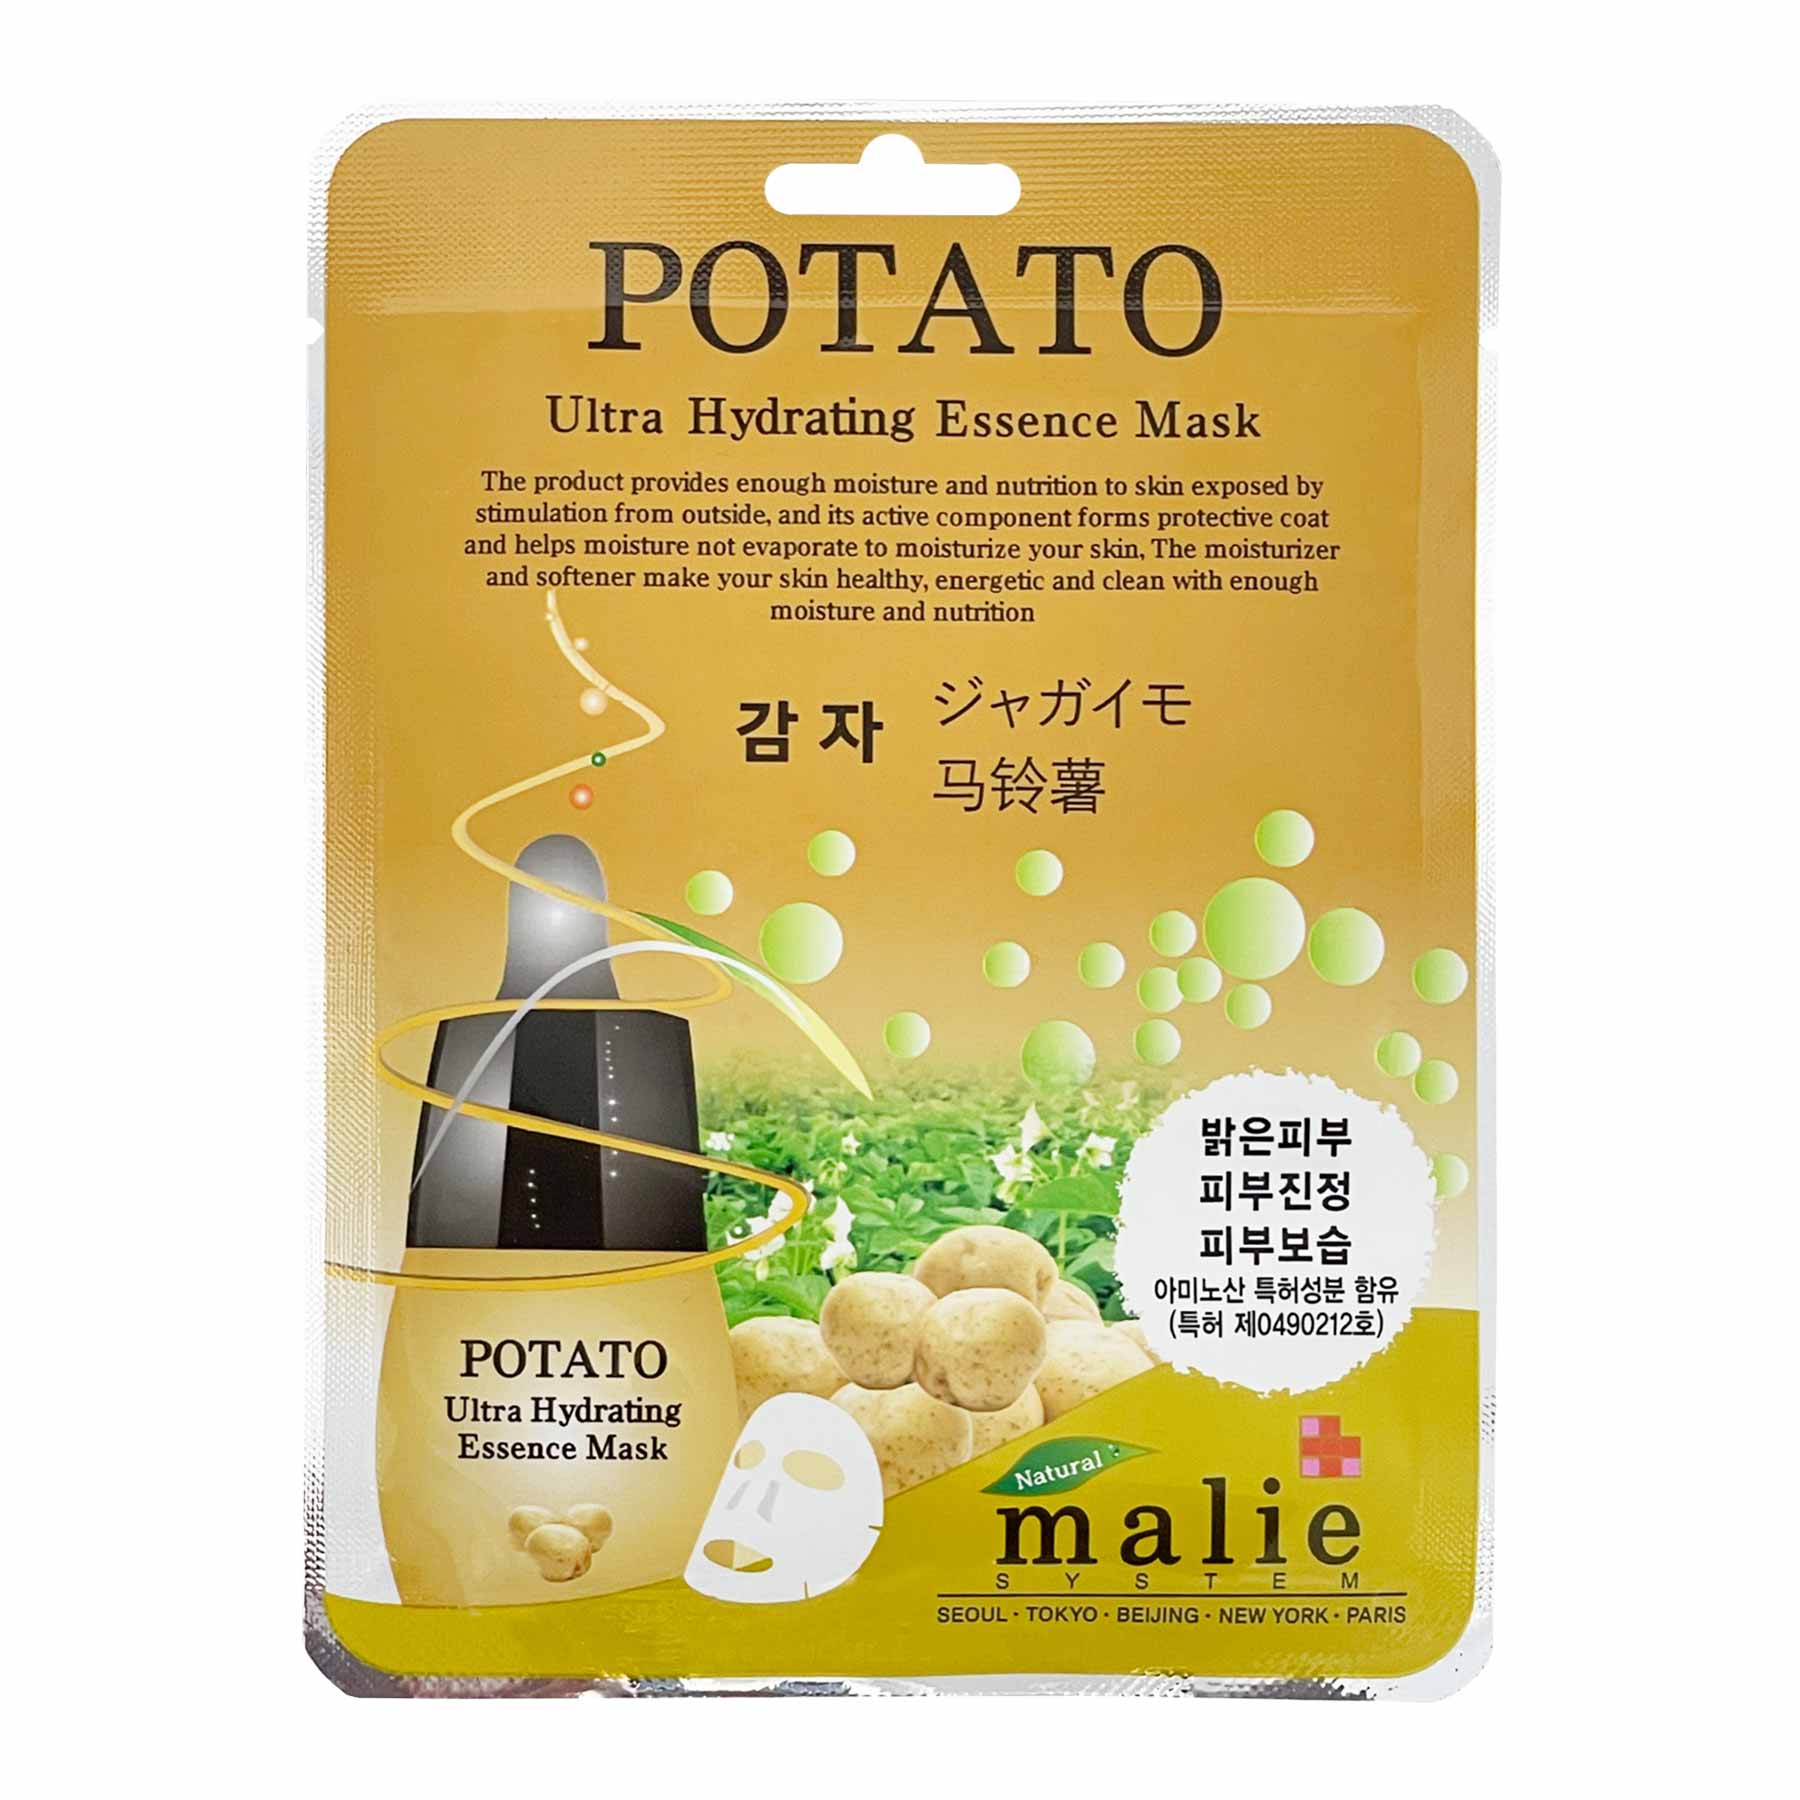 Potato Ultra Hydrating Essence Mask